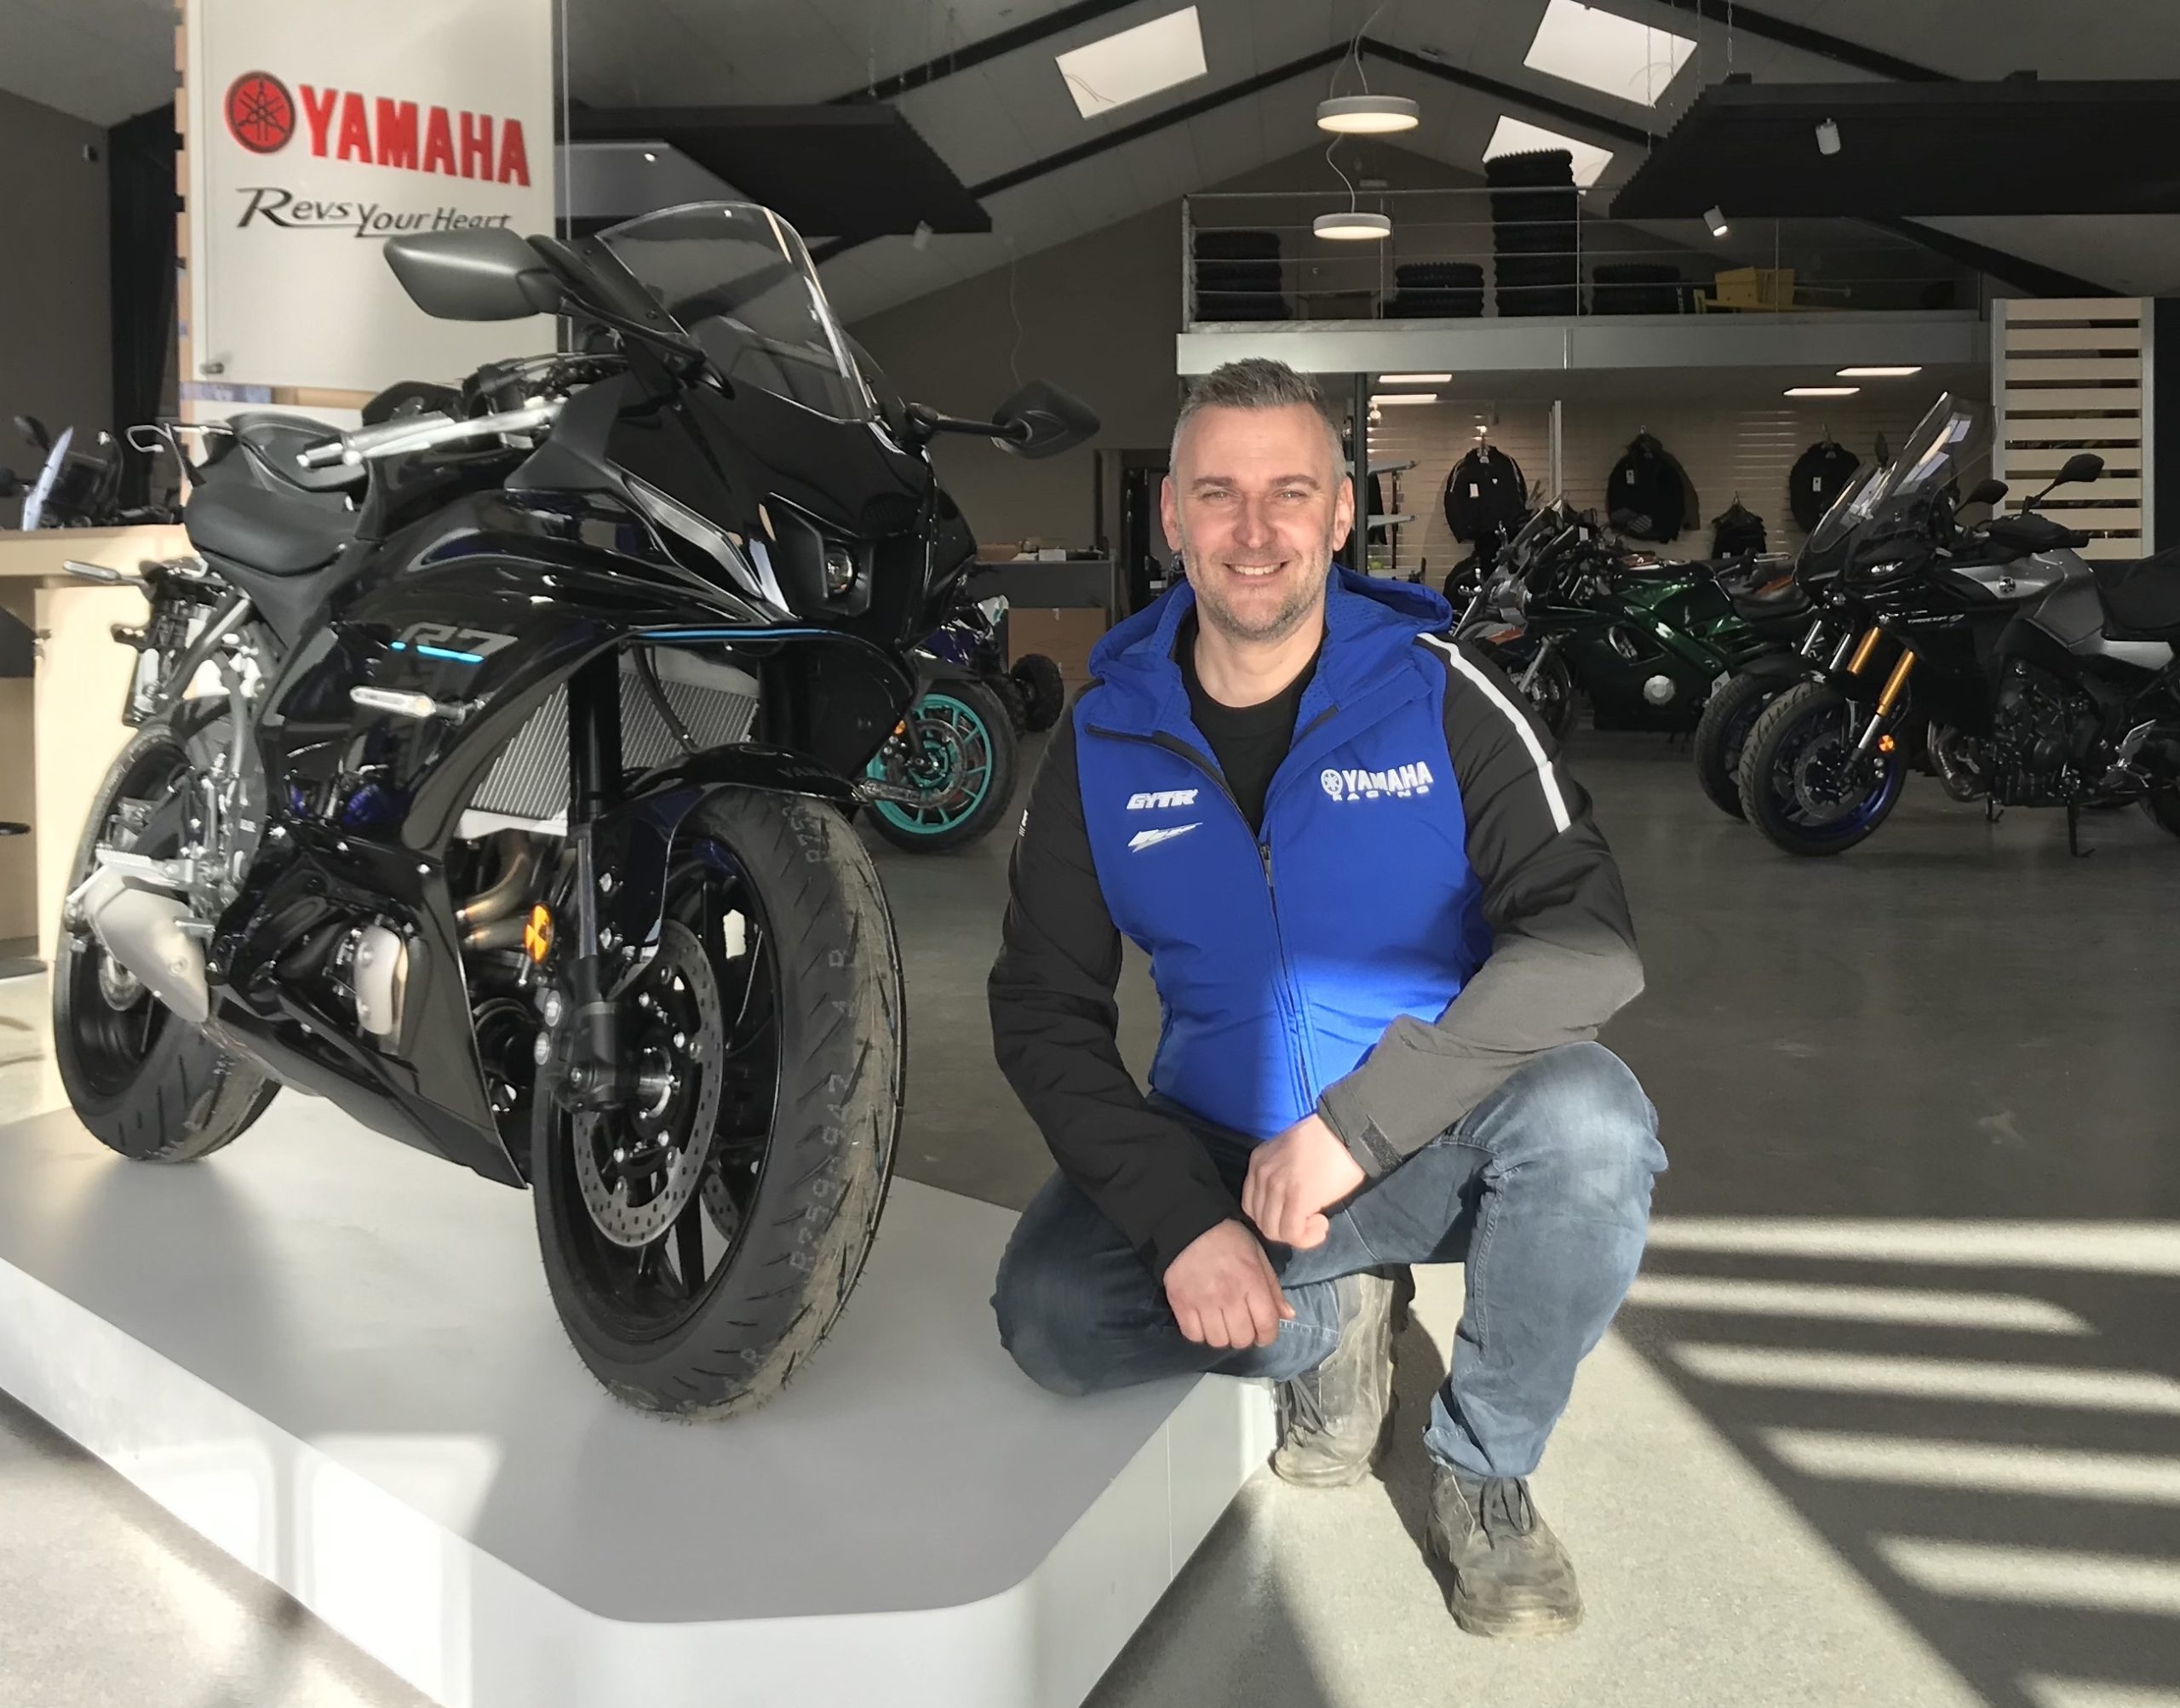 historie Begyndelsen FALSK Anders åbner ny Yamaha-forhandler i Sunds – Bike powered by Motorrad